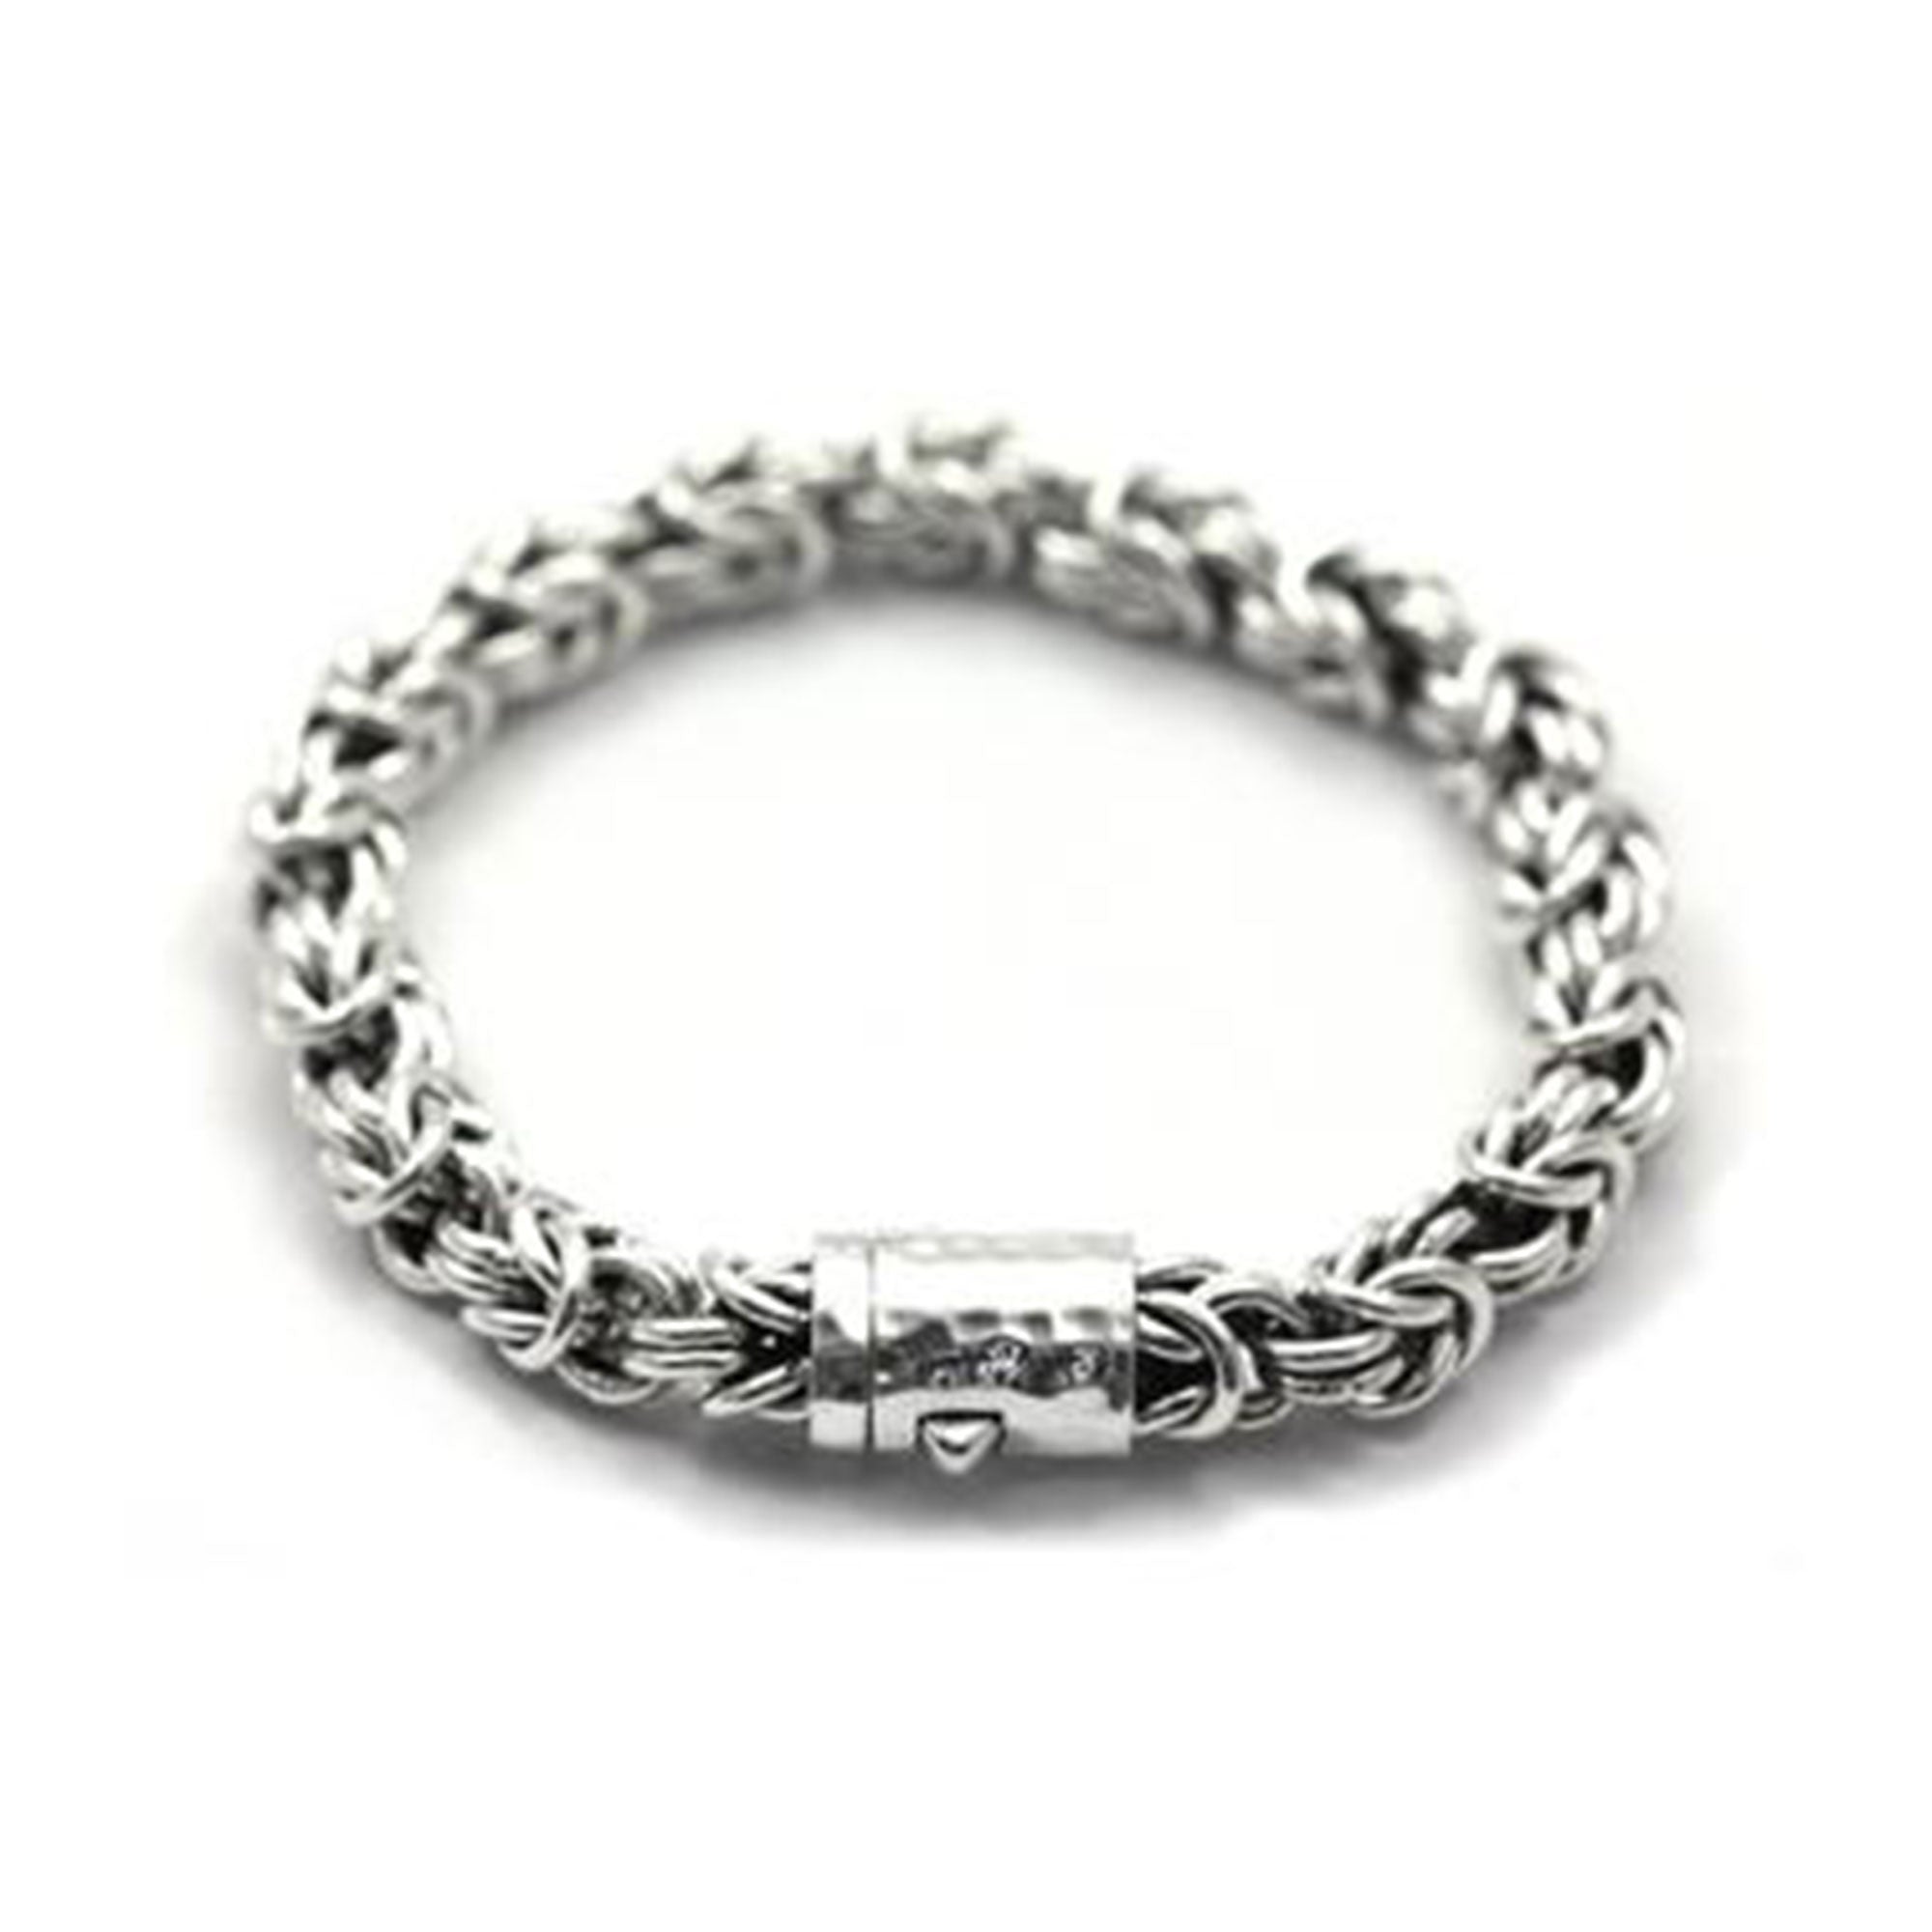 Women's Sterling Silver Byzantine Chain Bracelet (7.5